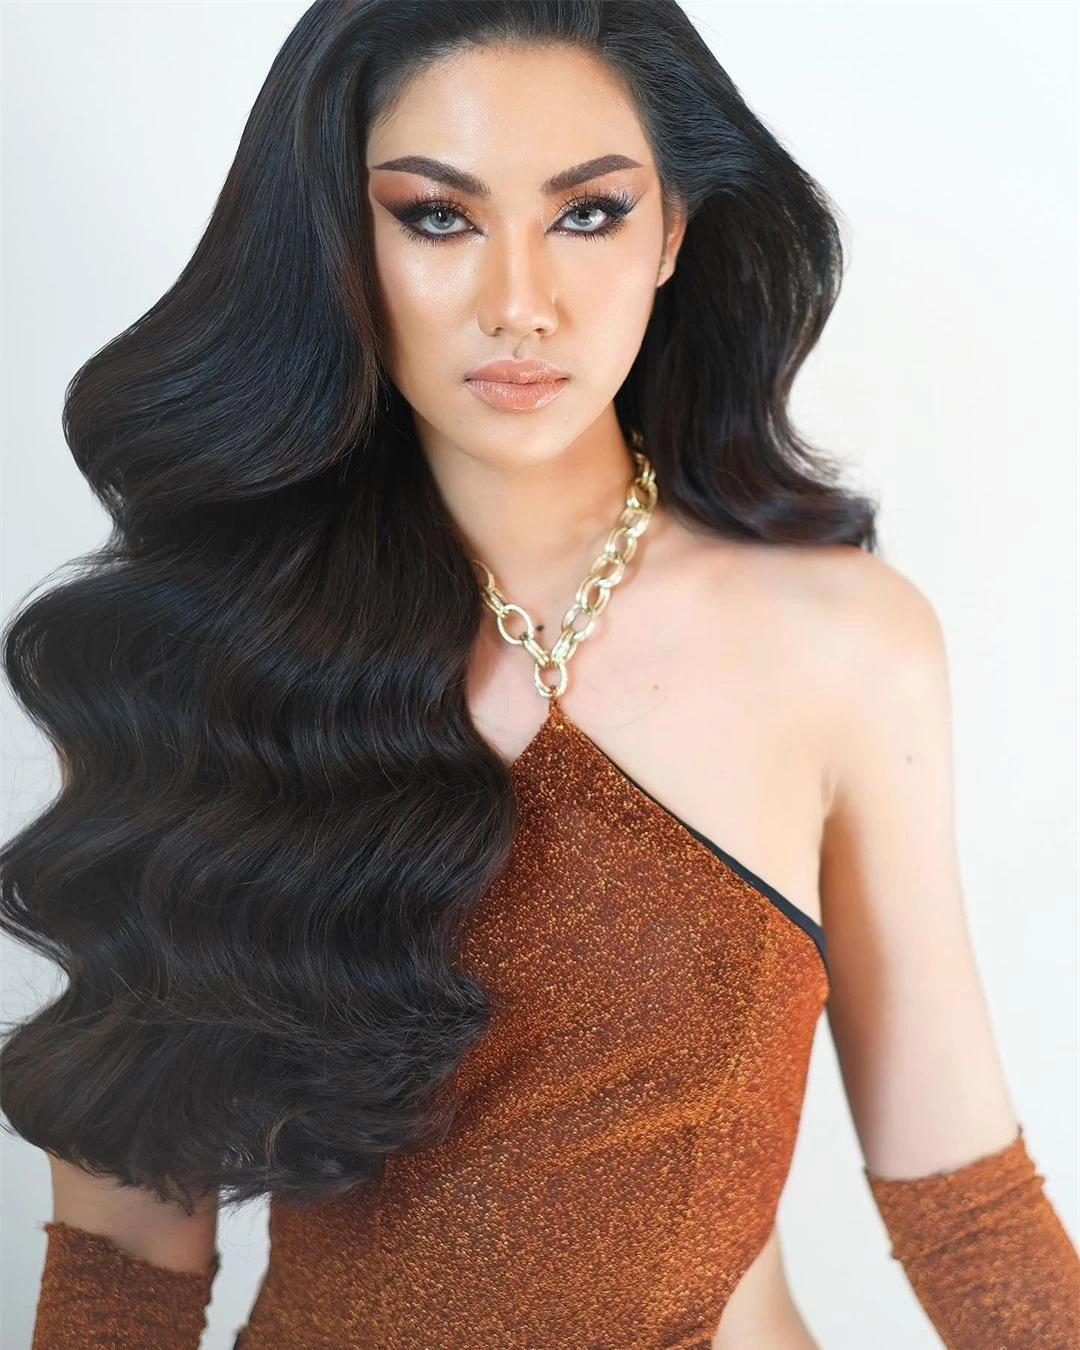 Tân Hoa hậu Hoàn vũ Campuchia được khen ngợi ảnh 4